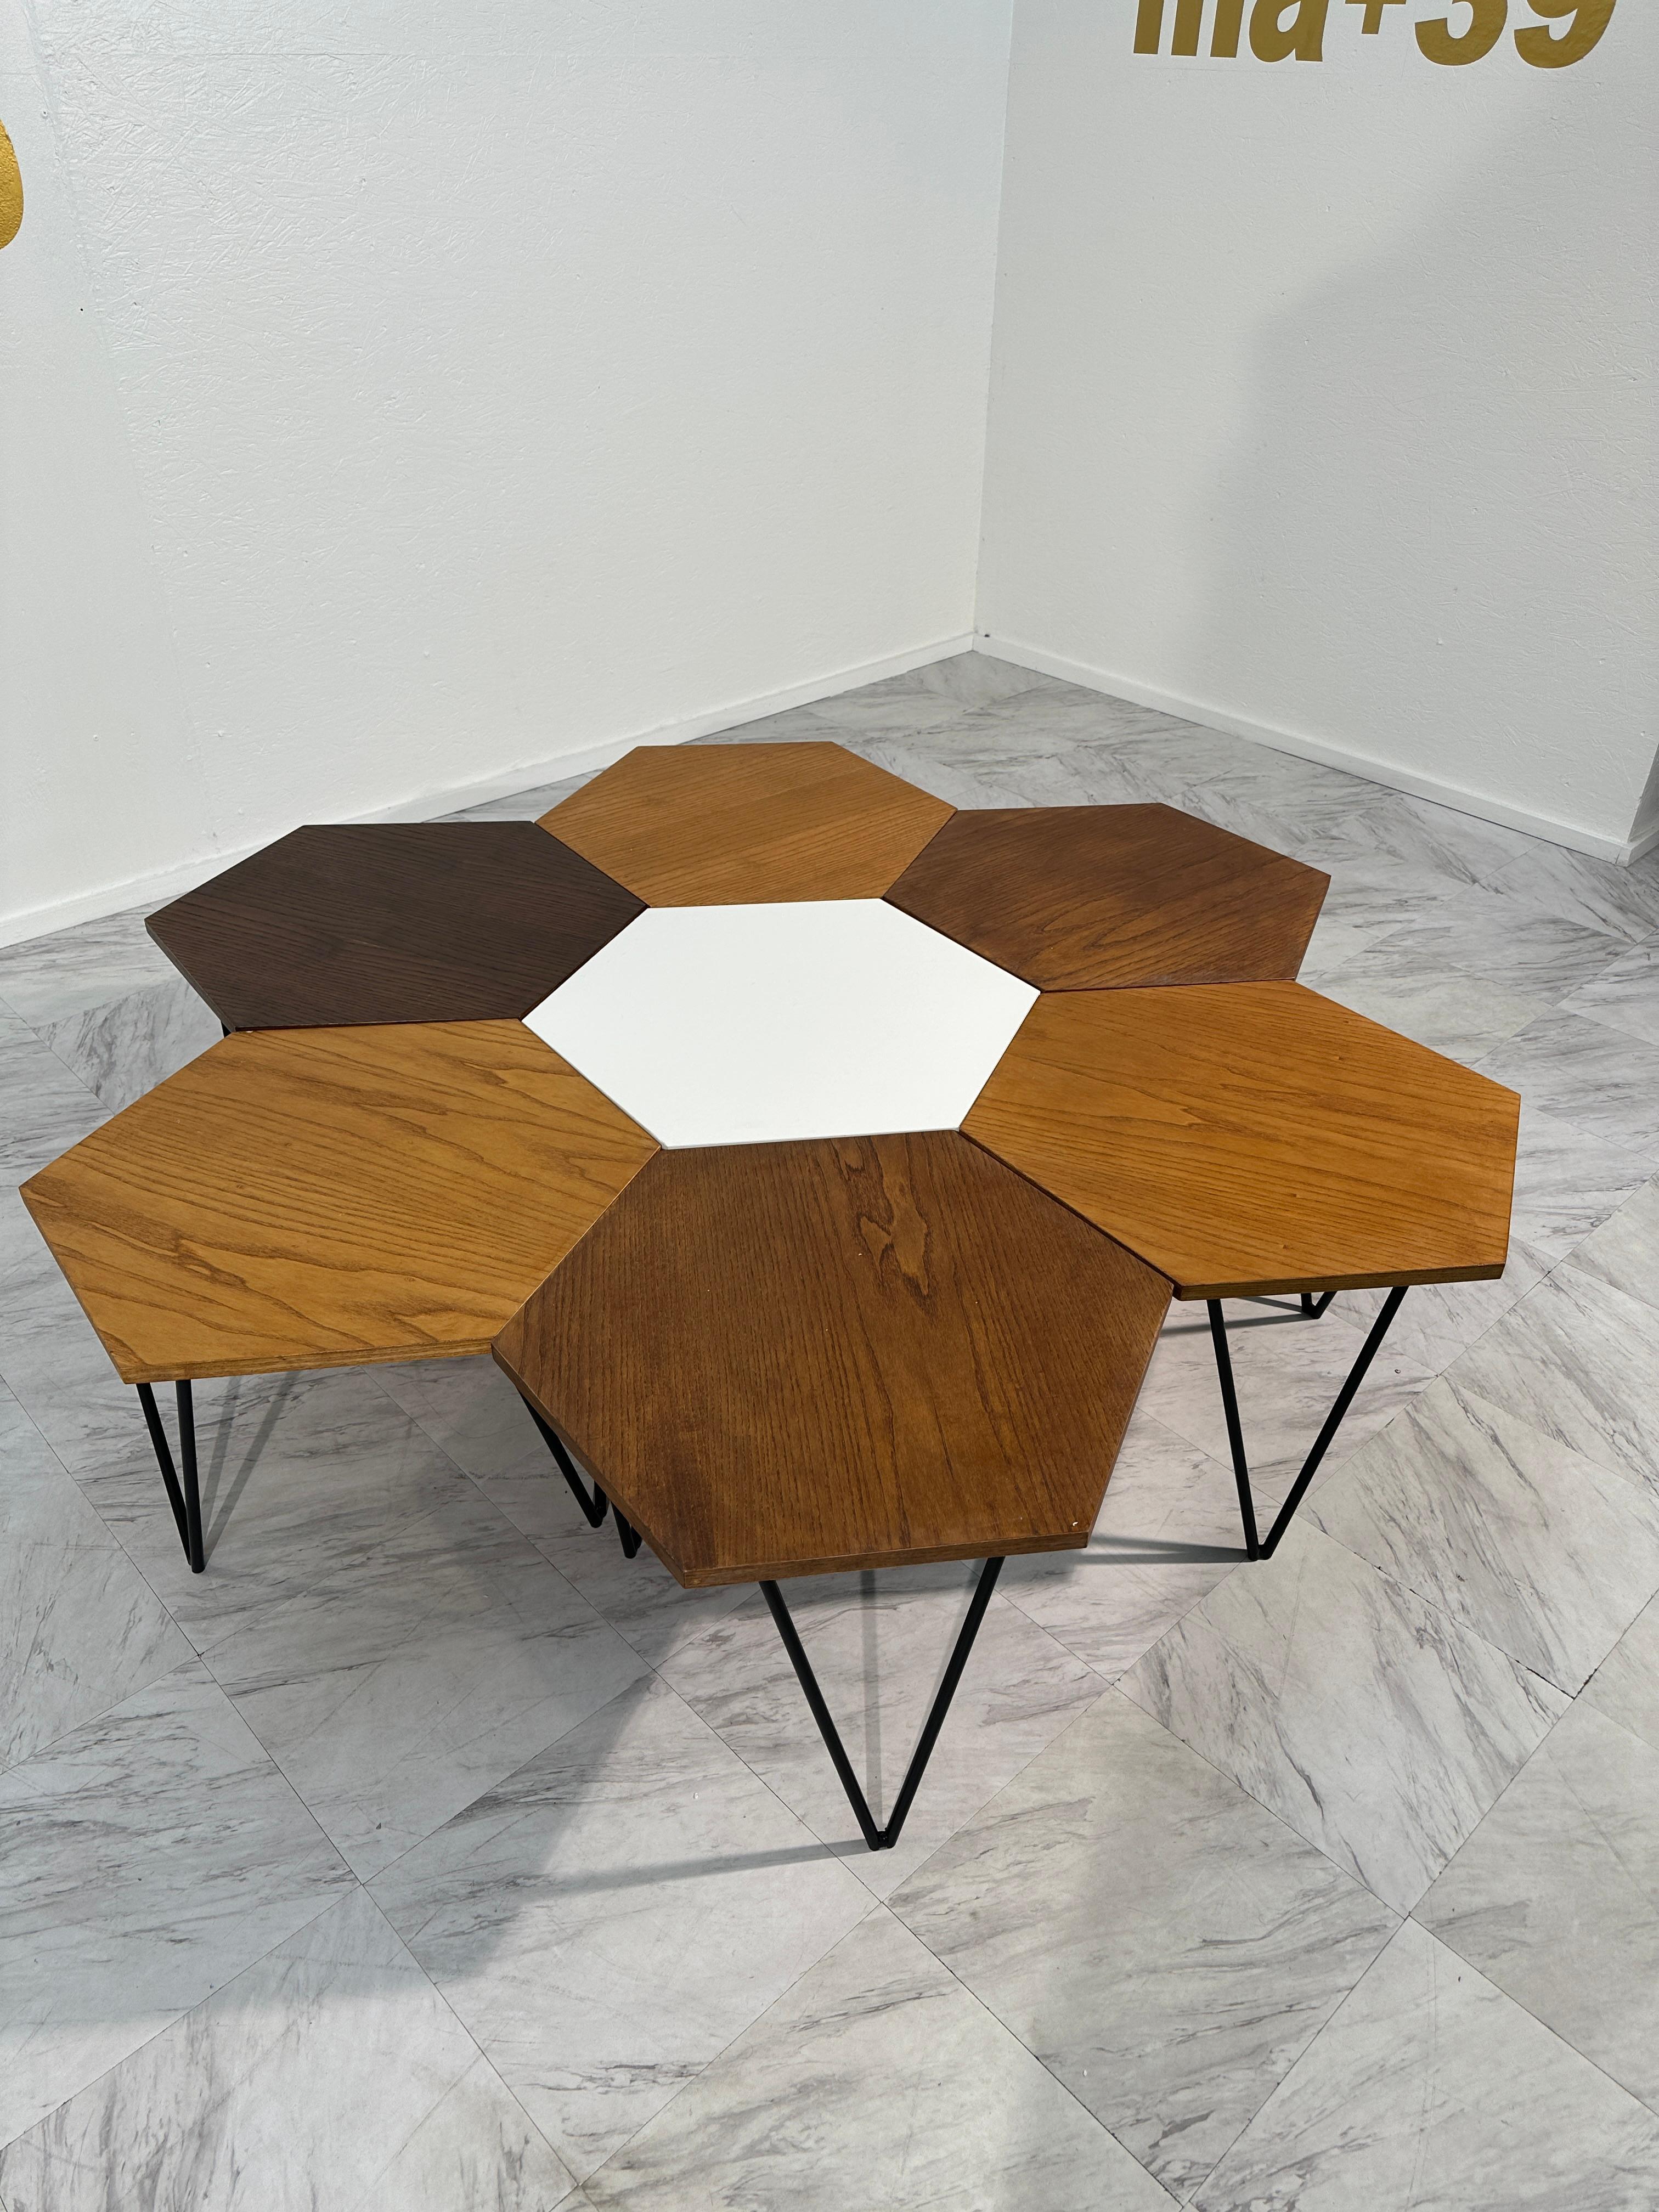 Plongez dans l'incarnation du design italien du milieu du siècle avec cet ensemble exceptionnellement rare de tables basses modulaires de Gio Ponti, méticuleusement fabriquées par Design/One dans les années 1950. Chaque pièce porte la marque de